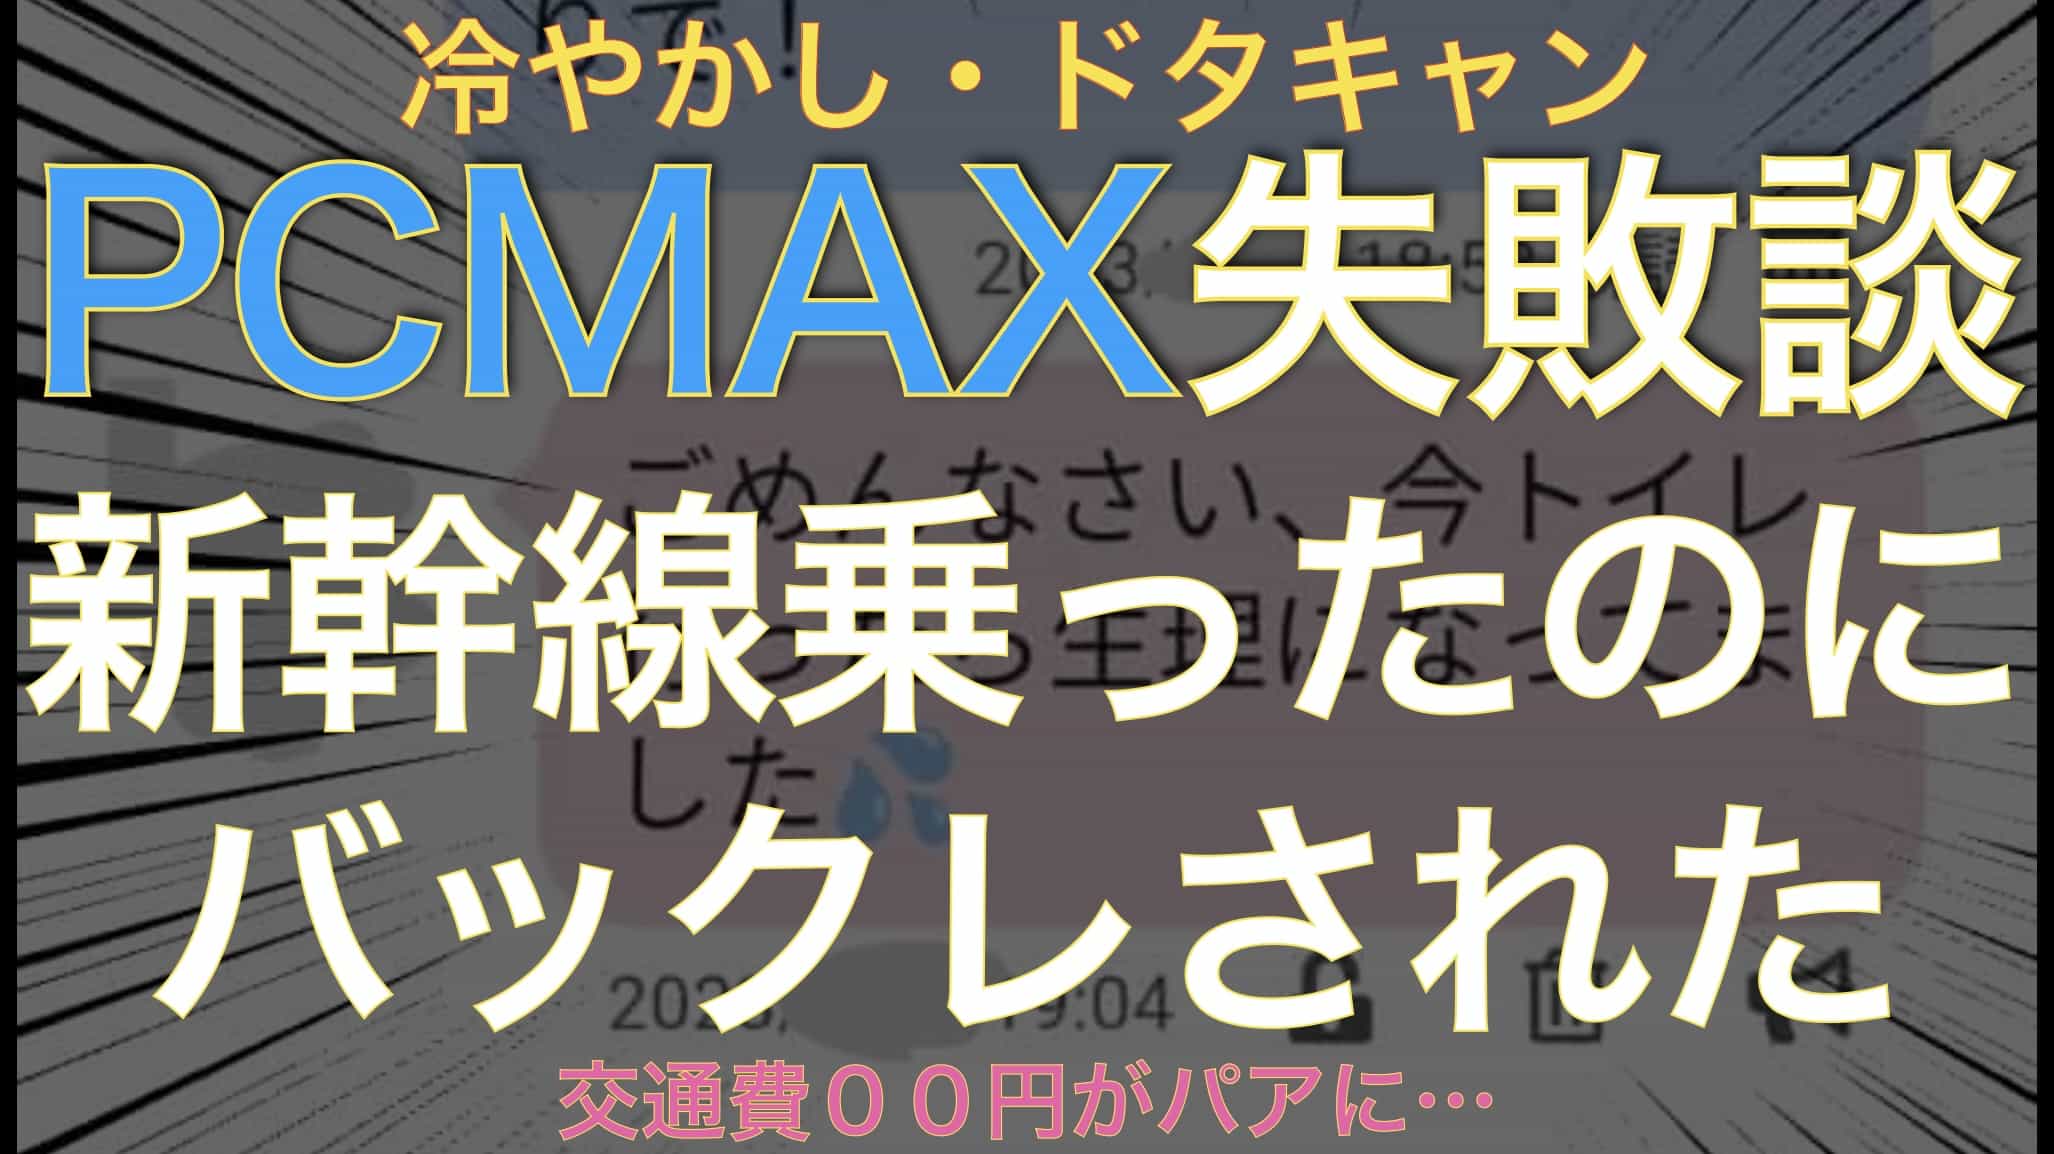 【PCMAX失敗談】新幹線乗って女の子に会いに行ったらドタキャンされて涙サムネイル画像2